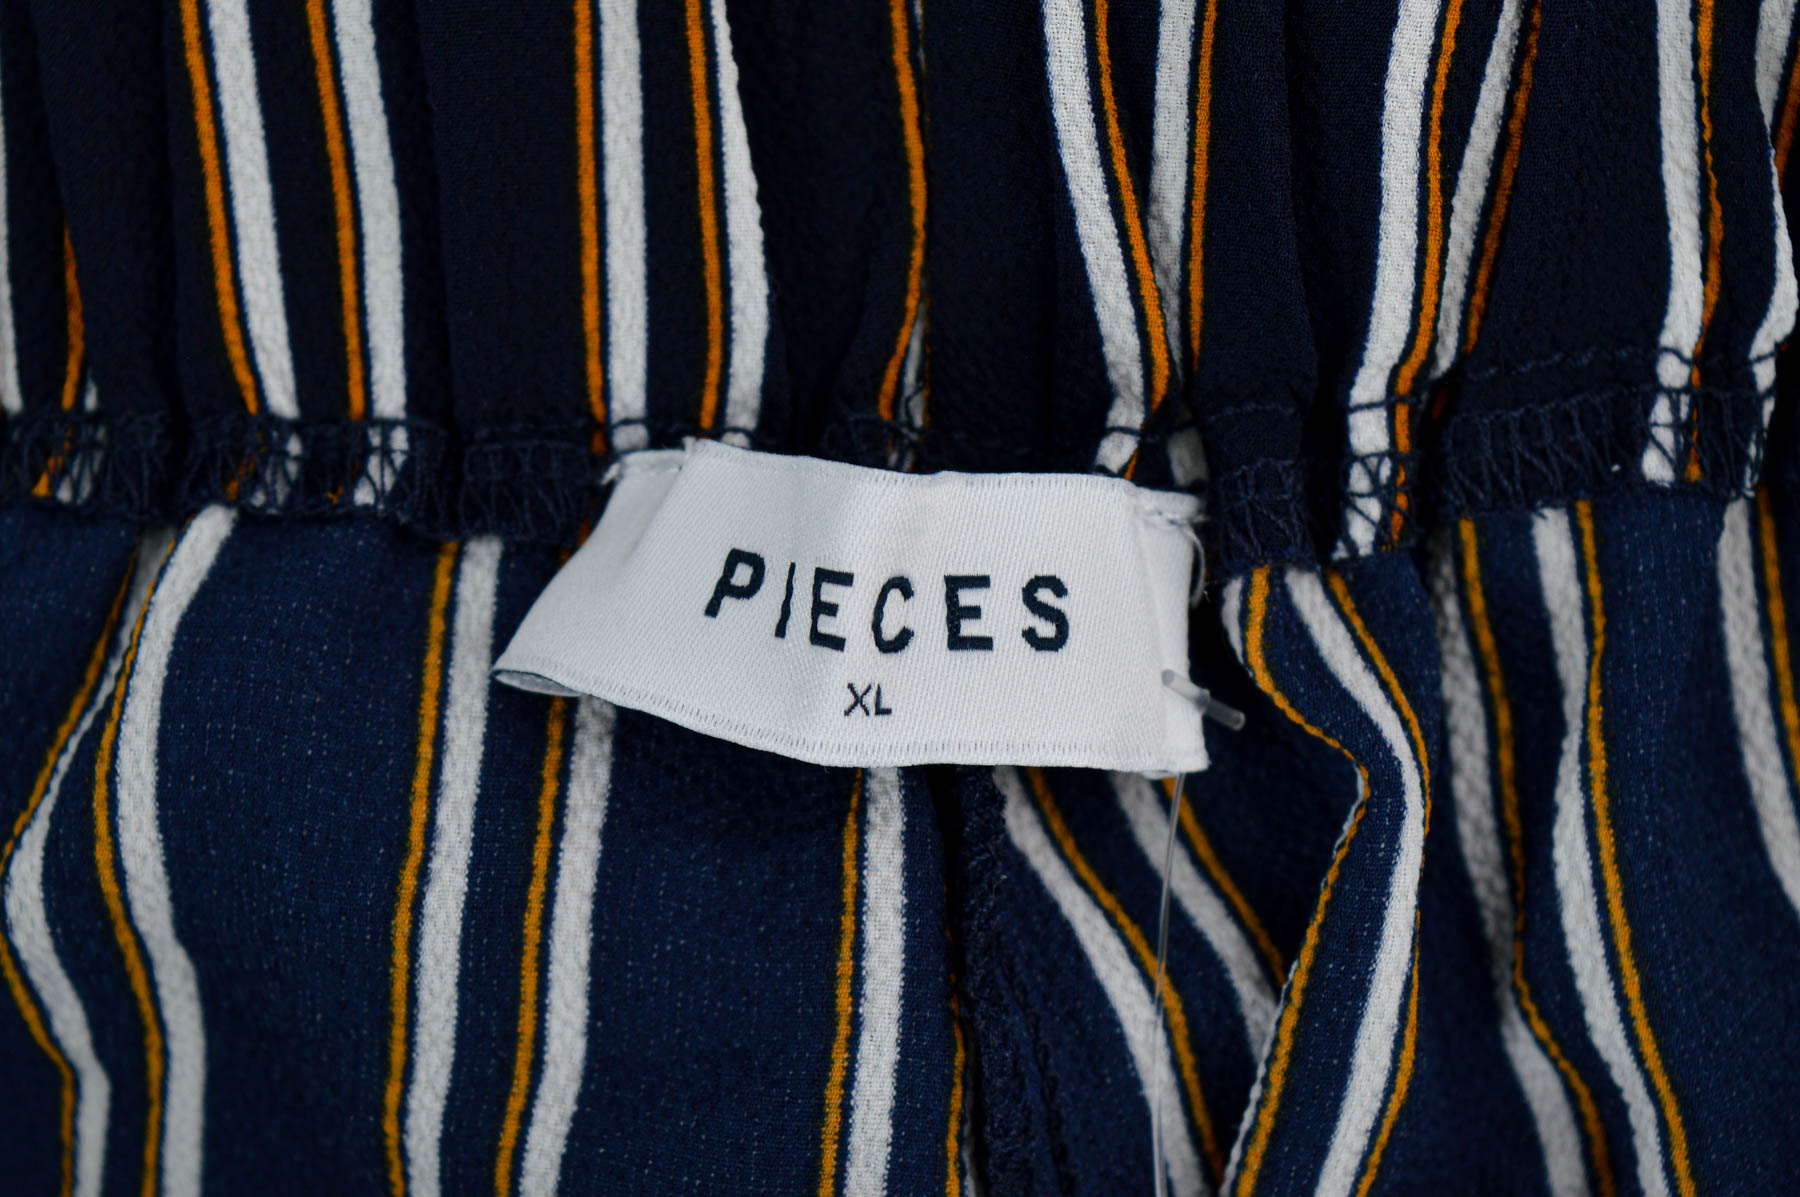 Дамски панталон - Pieces - 2